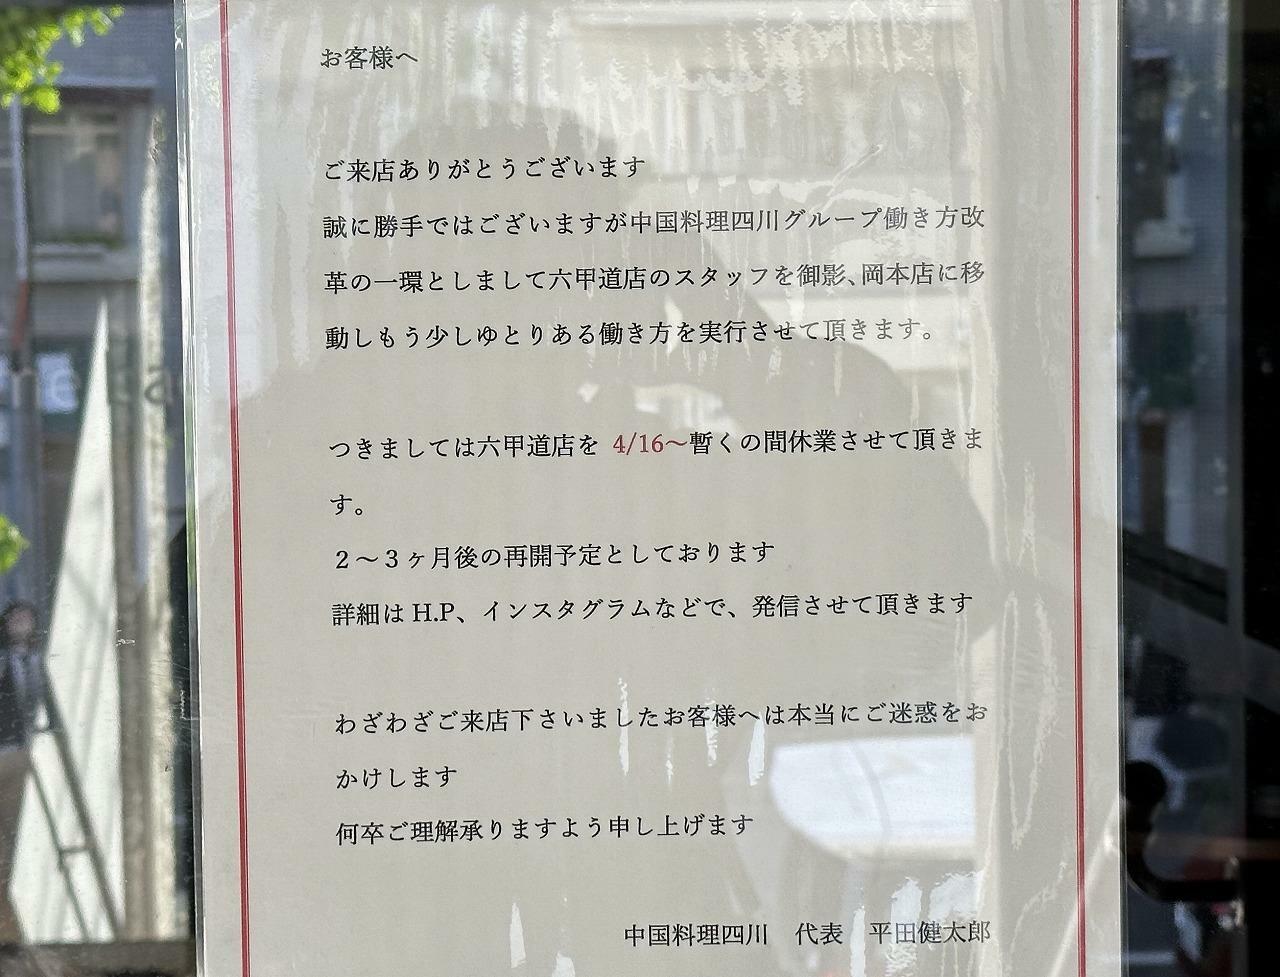 「四川 六甲道店」臨時休業のお知らせ